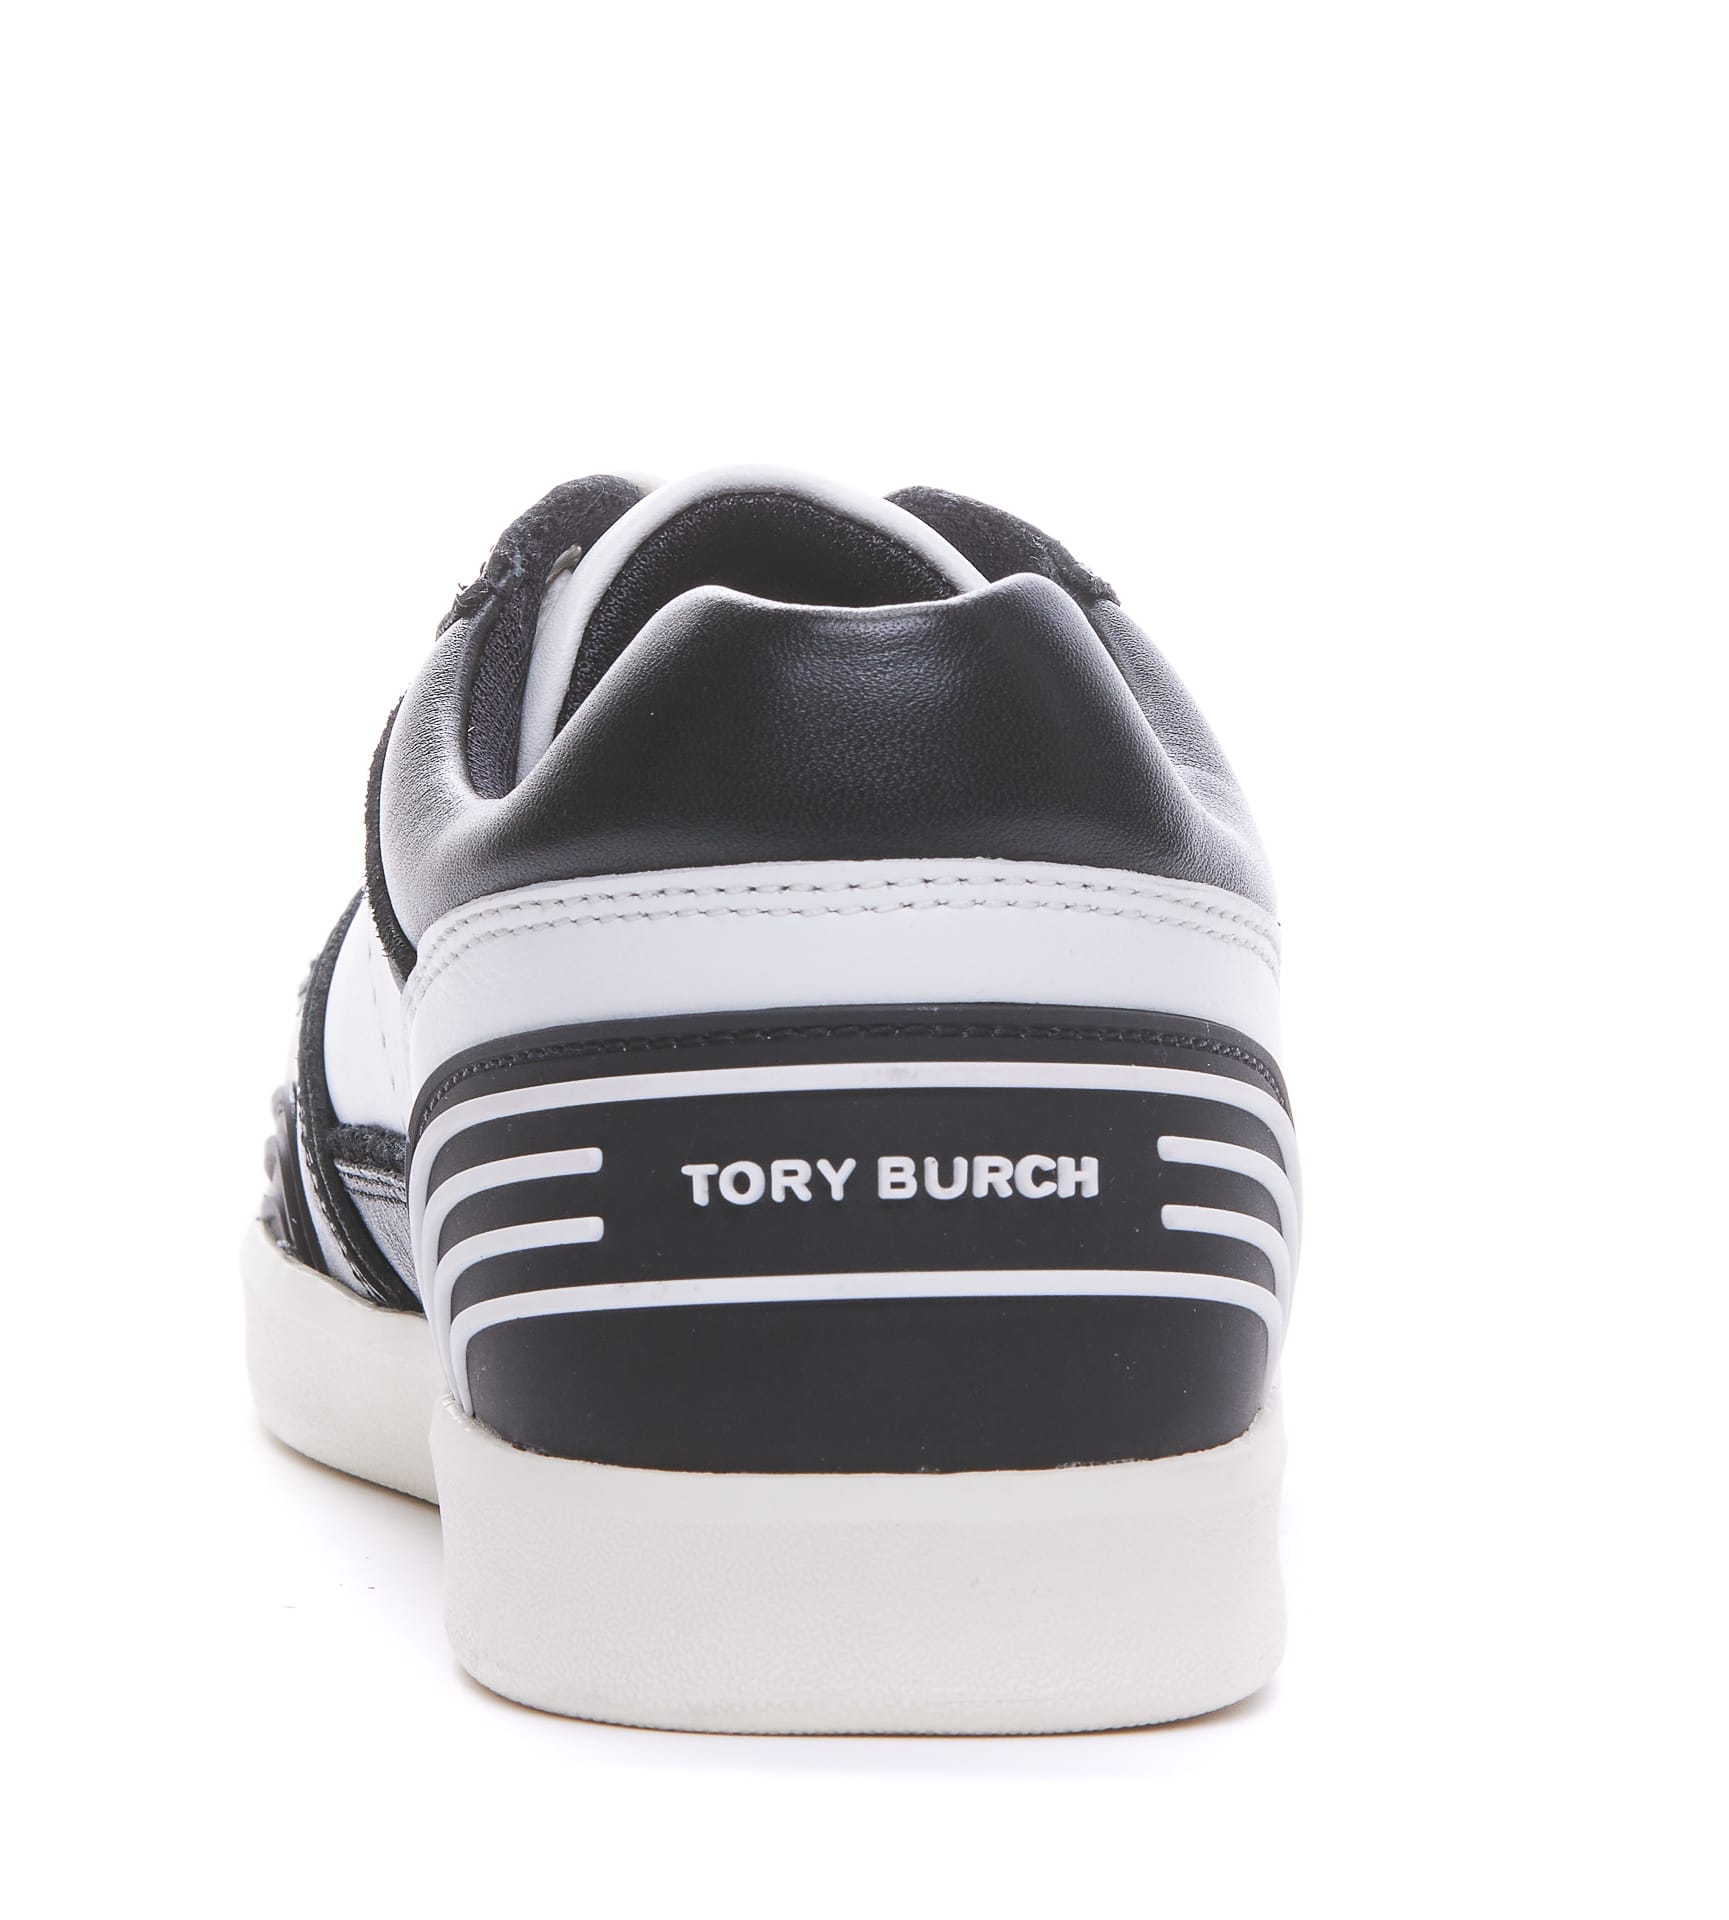 Tory Burch Women's Clover Court Sneaker